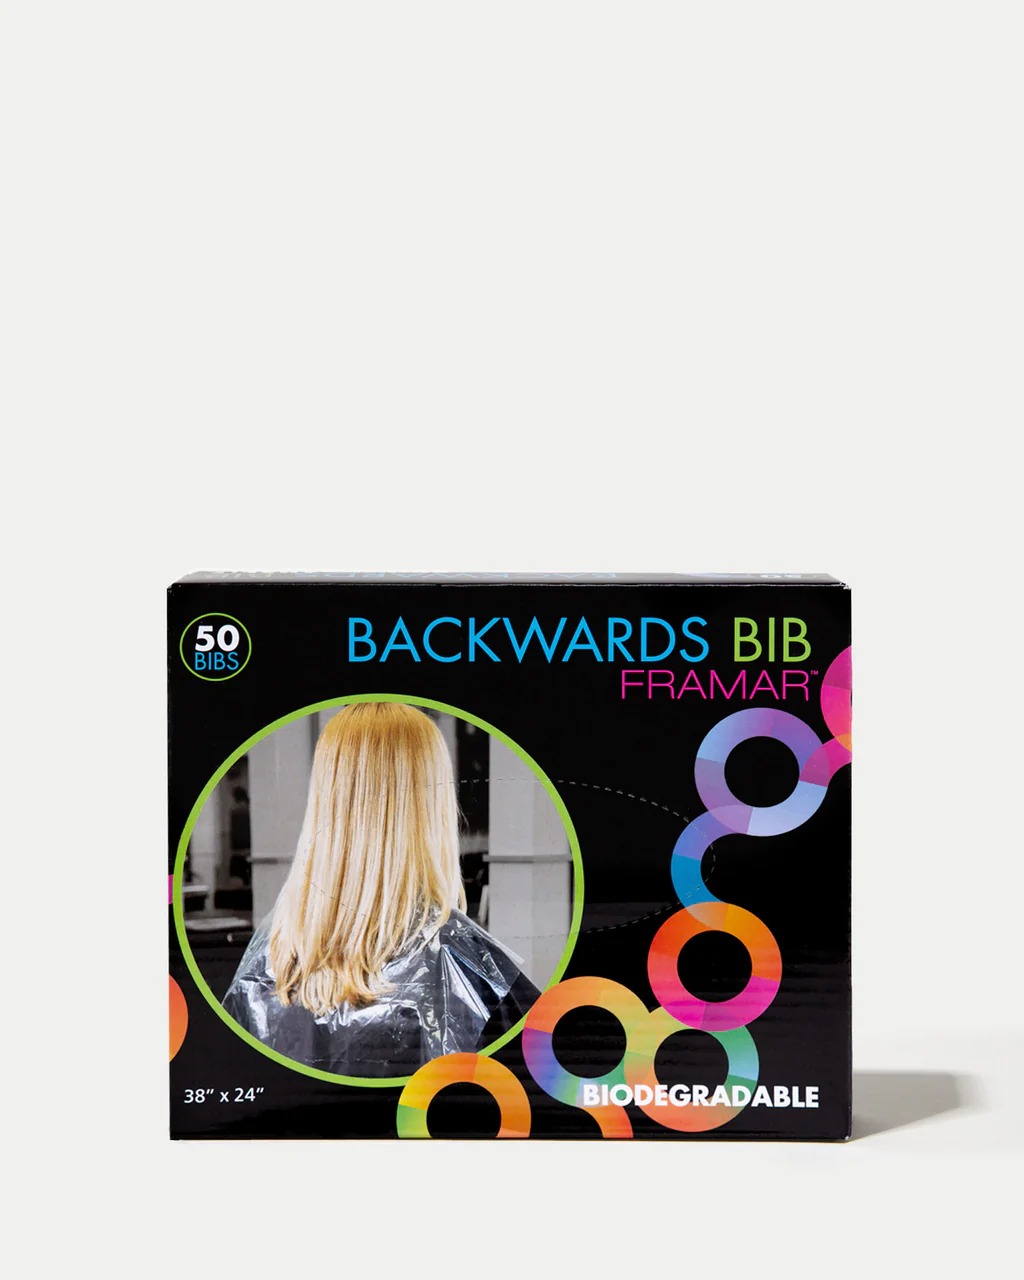 Framar Backwards Bib - Przezroczyste Pelerynki Ochronne 50szt